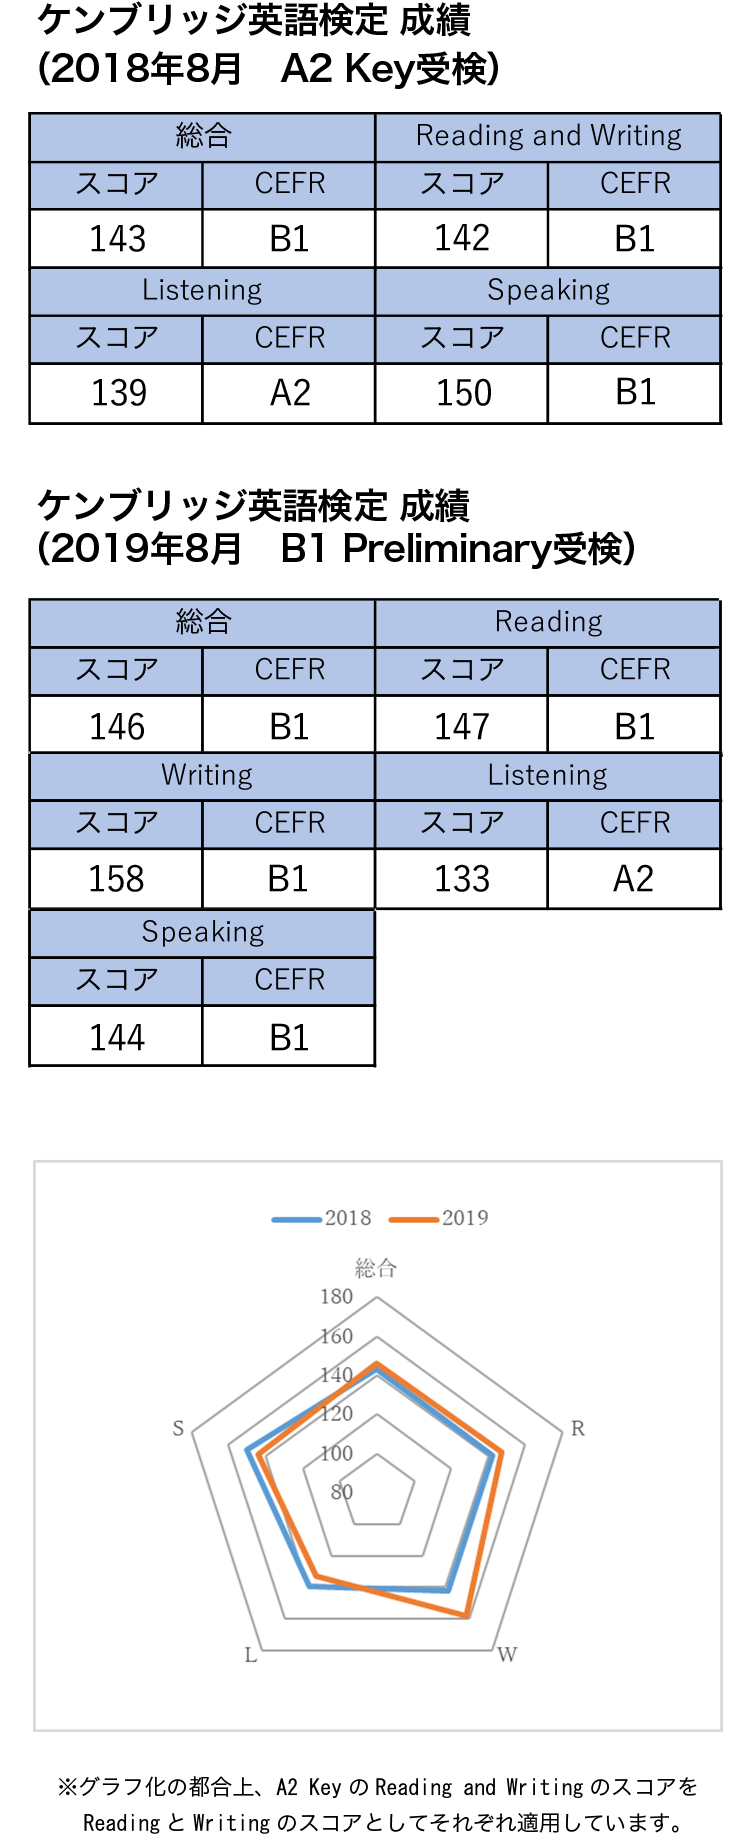 ケンブリッジ英語検定 2018年8月 A2 Key受検、2019年8月 B1 Preliminary受検